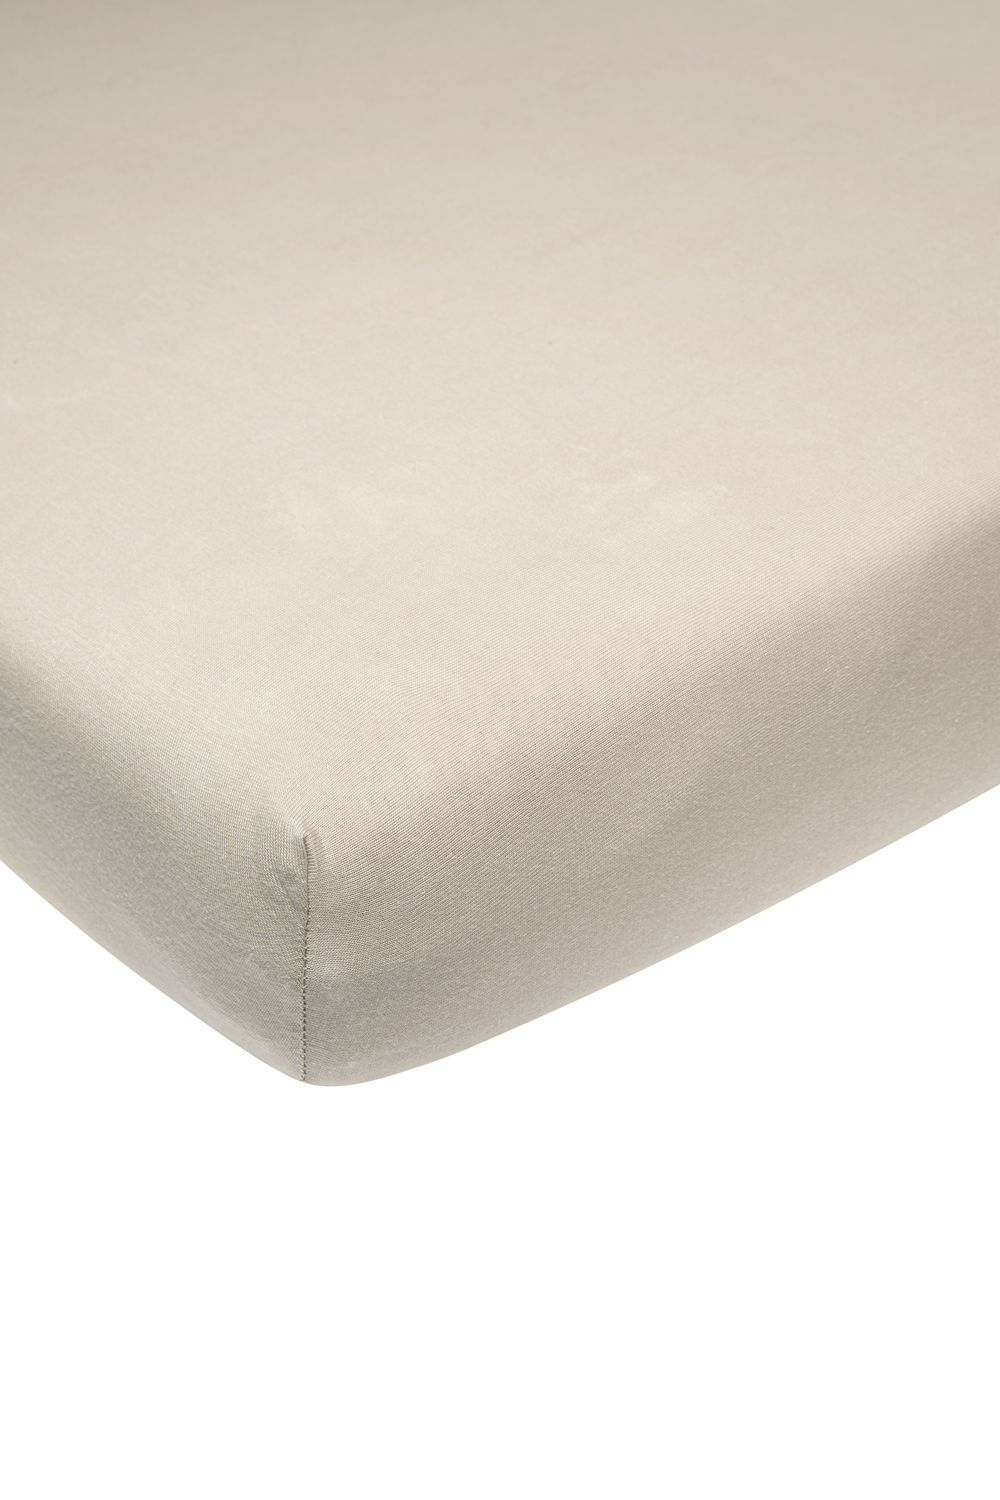 Fitted sheet playpen mattress Uni - sand - 75x95cm